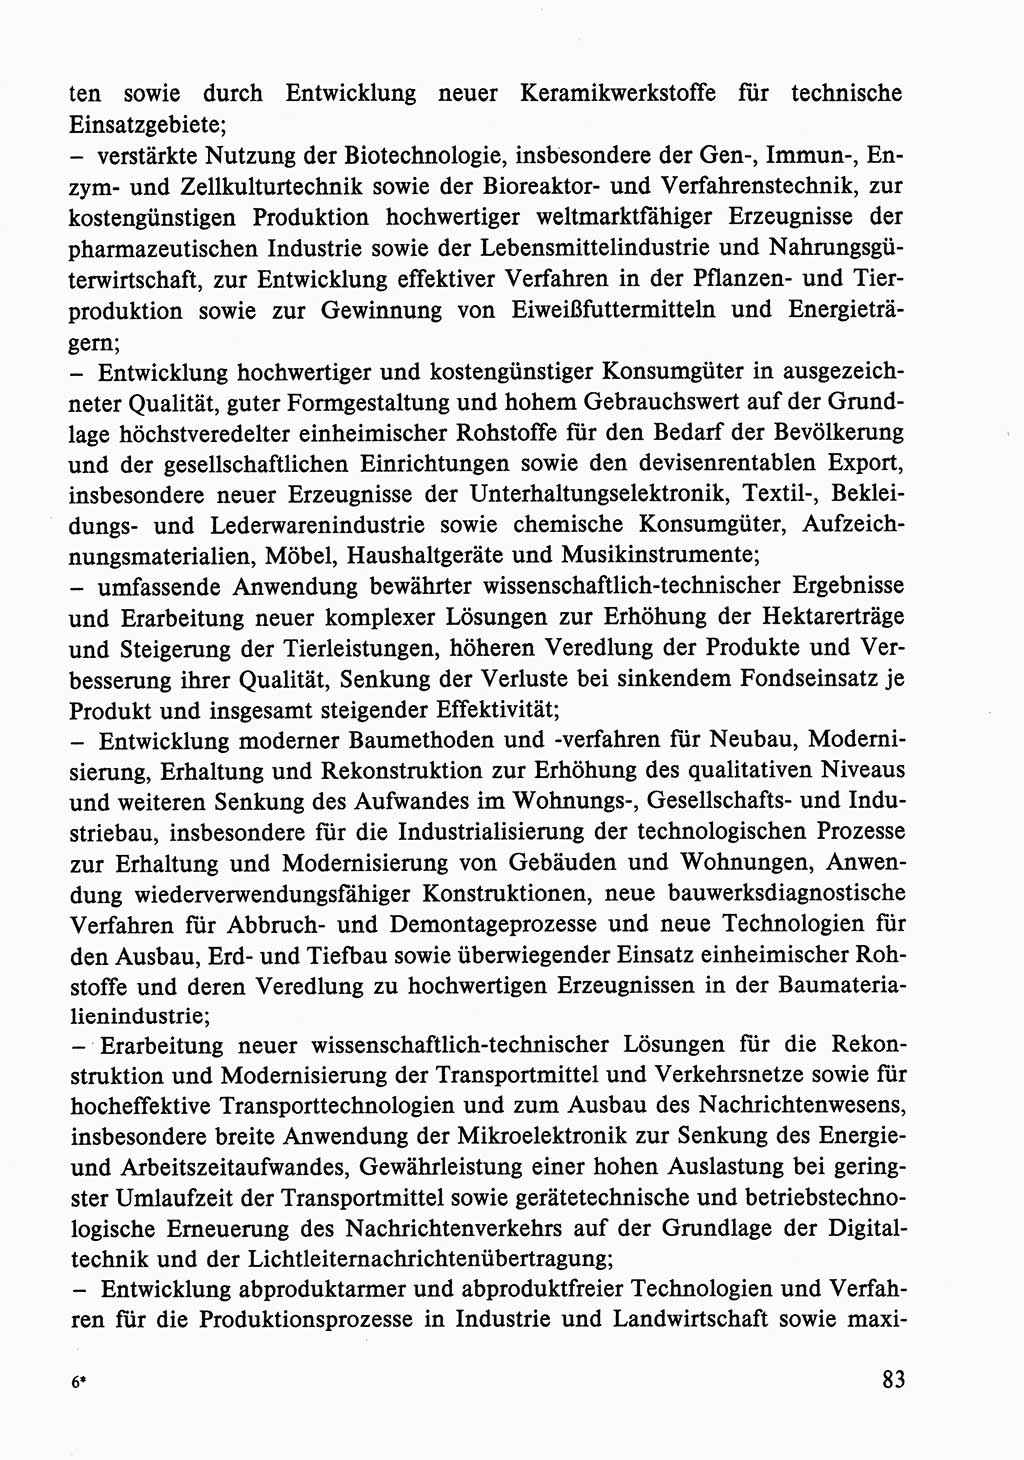 Dokumente der Sozialistischen Einheitspartei Deutschlands (SED) [Deutsche Demokratische Republik (DDR)] 1986-1987, Seite 83 (Dok. SED DDR 1986-1987, S. 83)